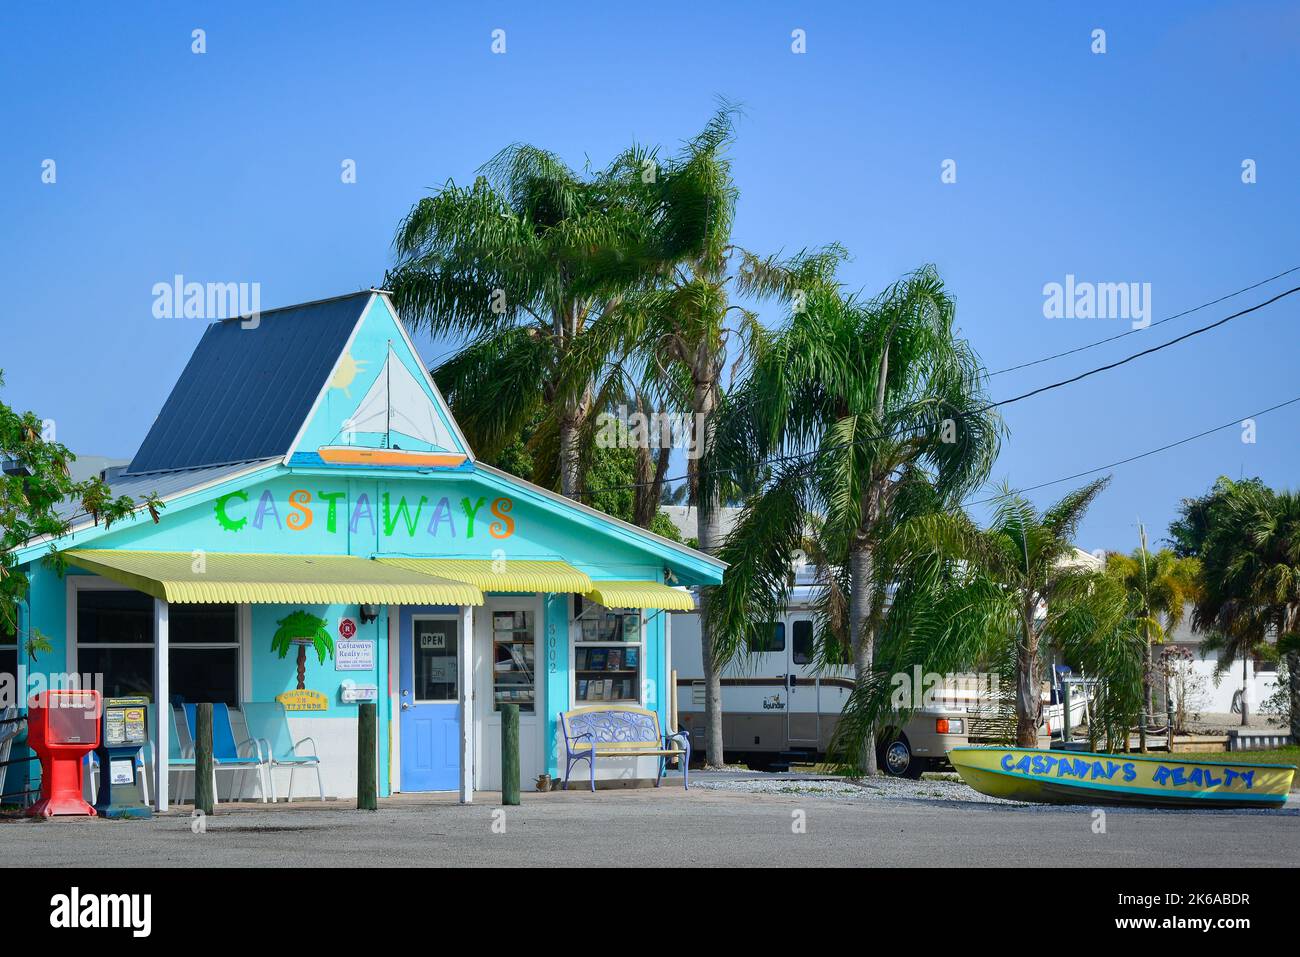 Un affascinante piccolo edificio in colori pastello ospita il Castaways Realty business con barca parcheggiata di fronte a St. James City, Pine Island, Florida Foto Stock